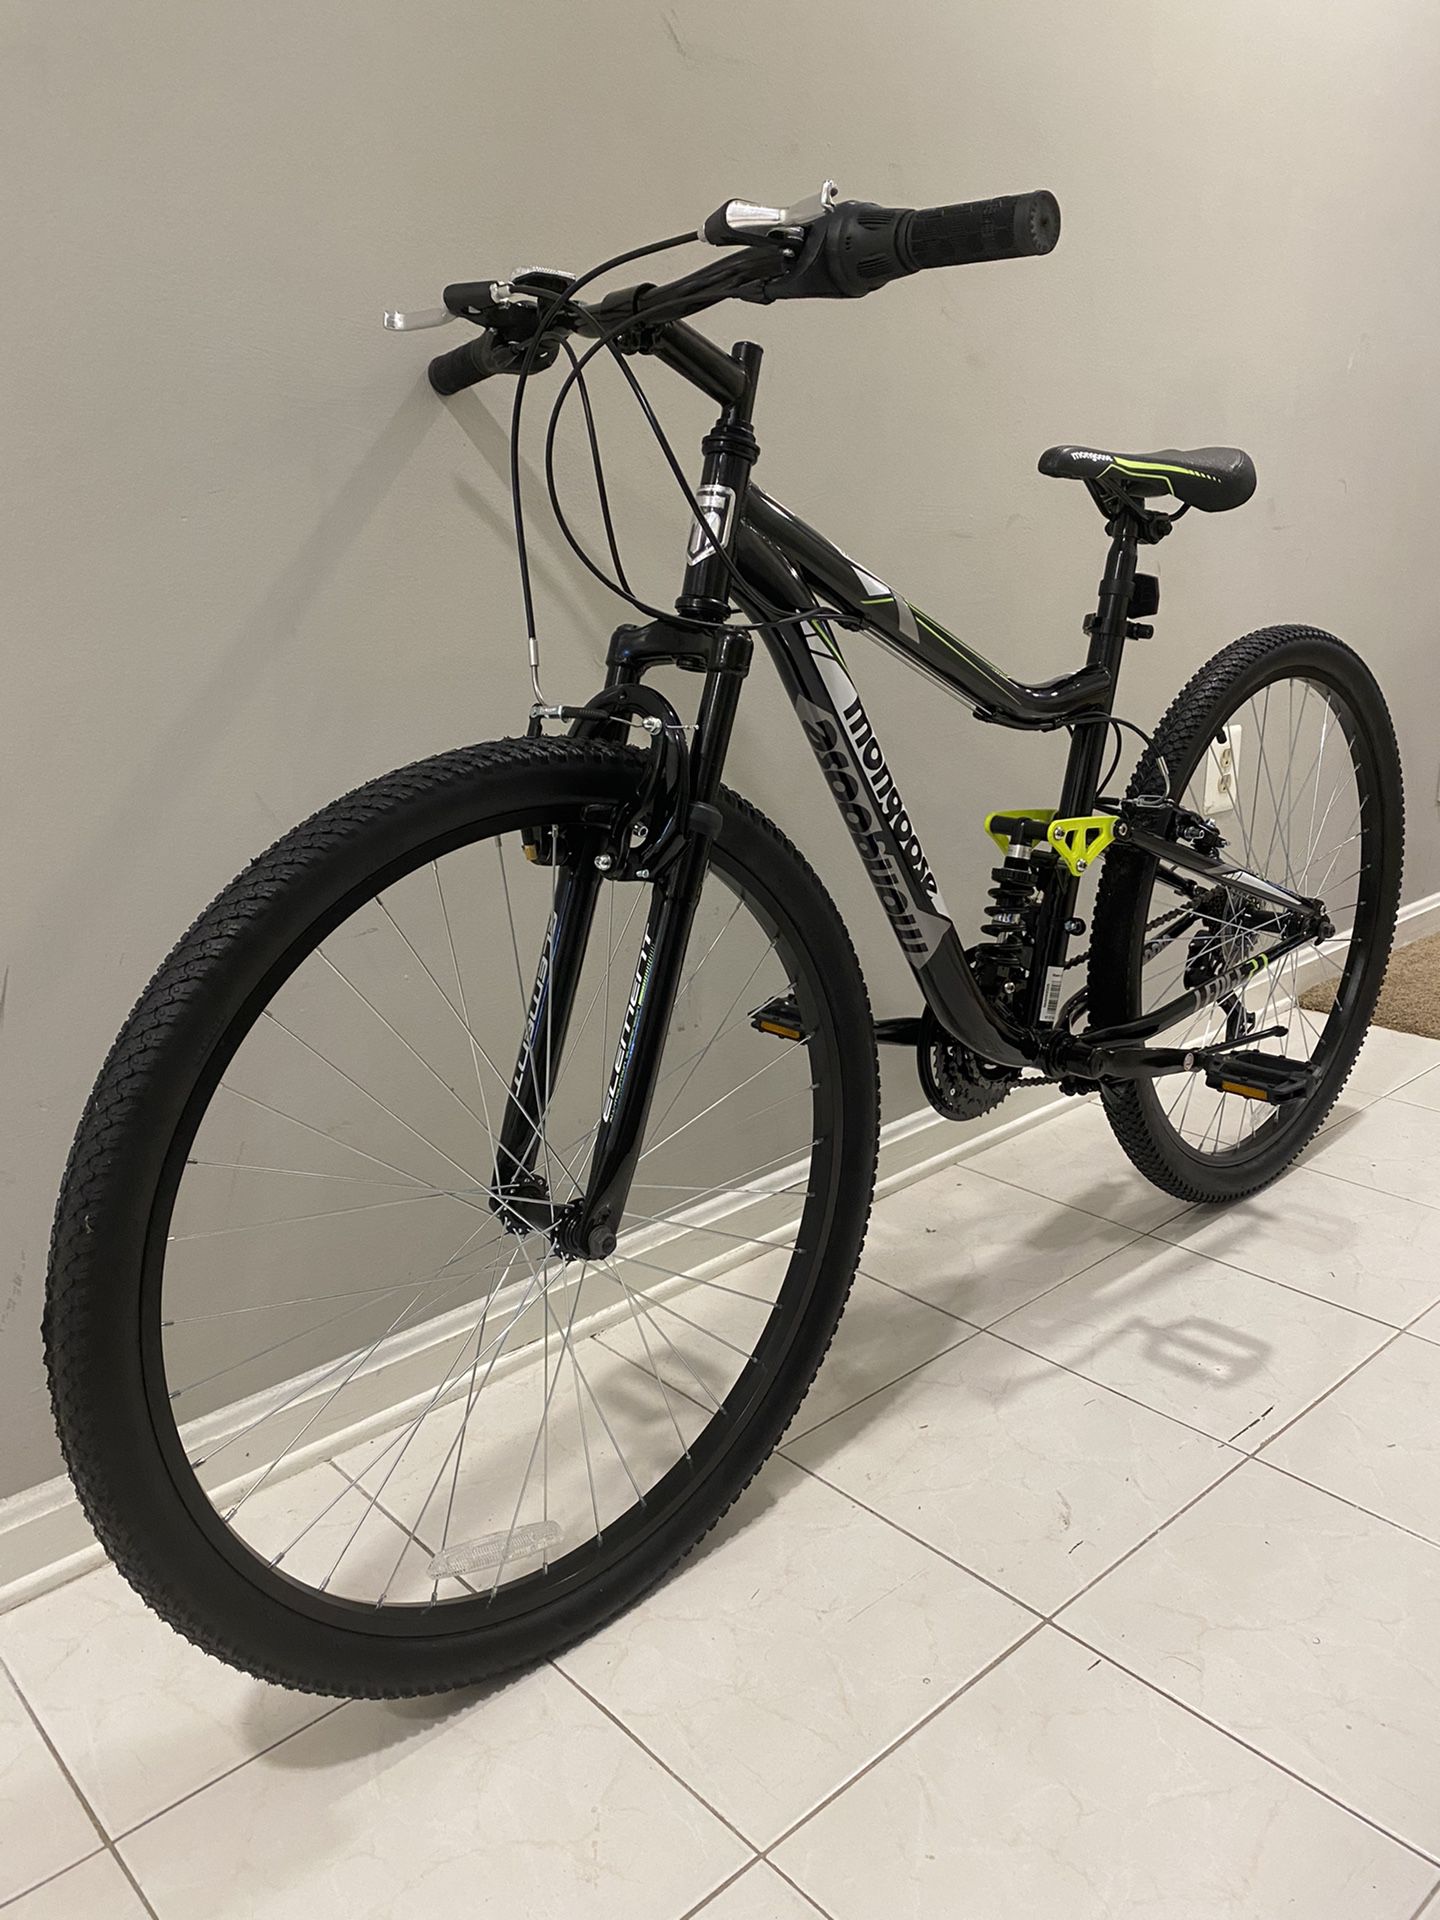 Brand new 27.5” Mountain Bike - full suspension